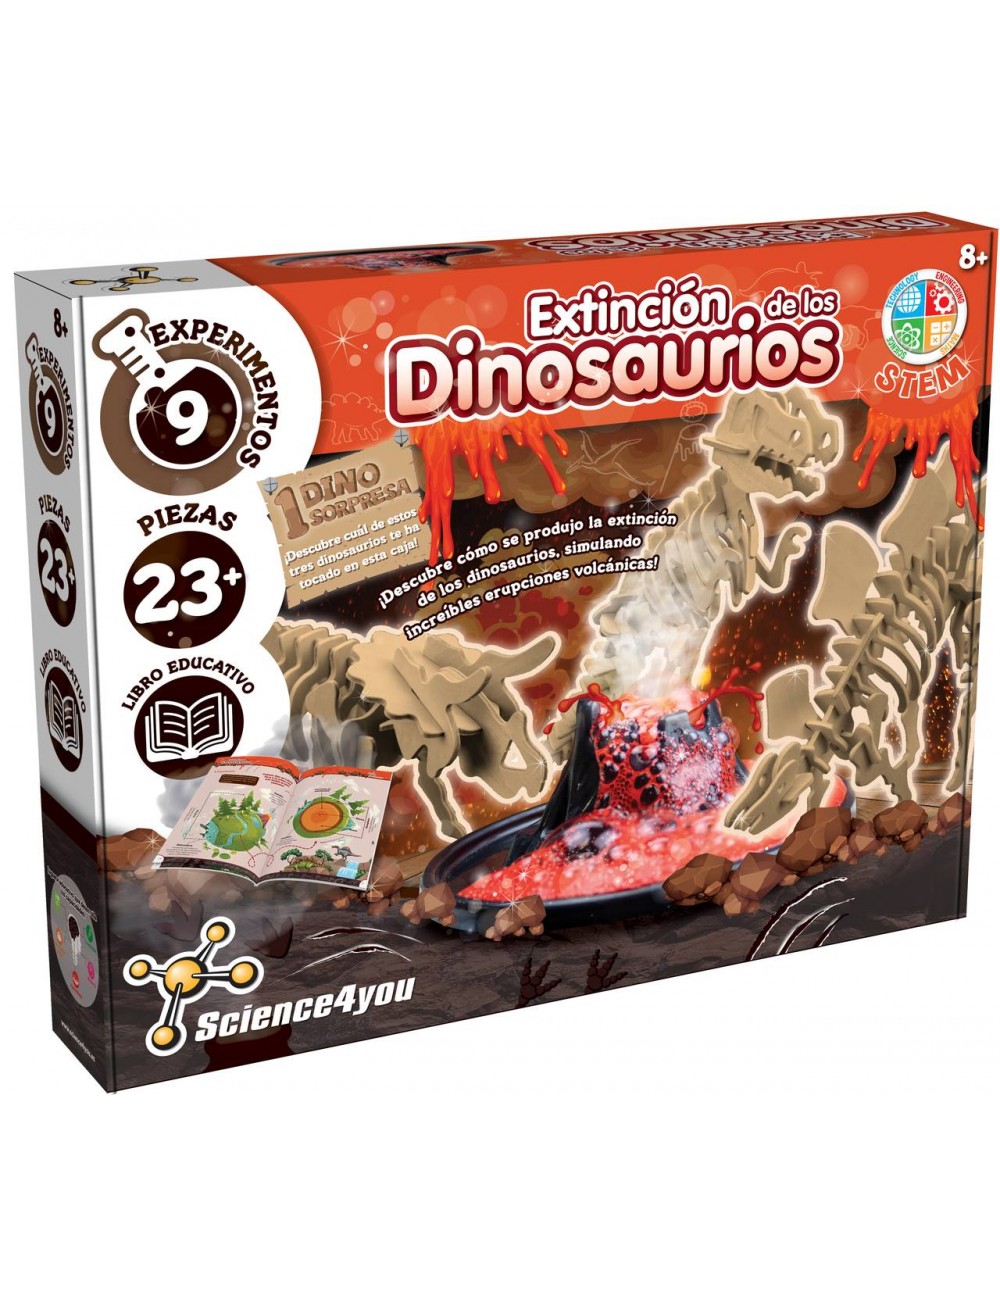 Extinción de los Dinosaurios - Juguete Dinosaurios para Niños con 8+ años |  Science4you